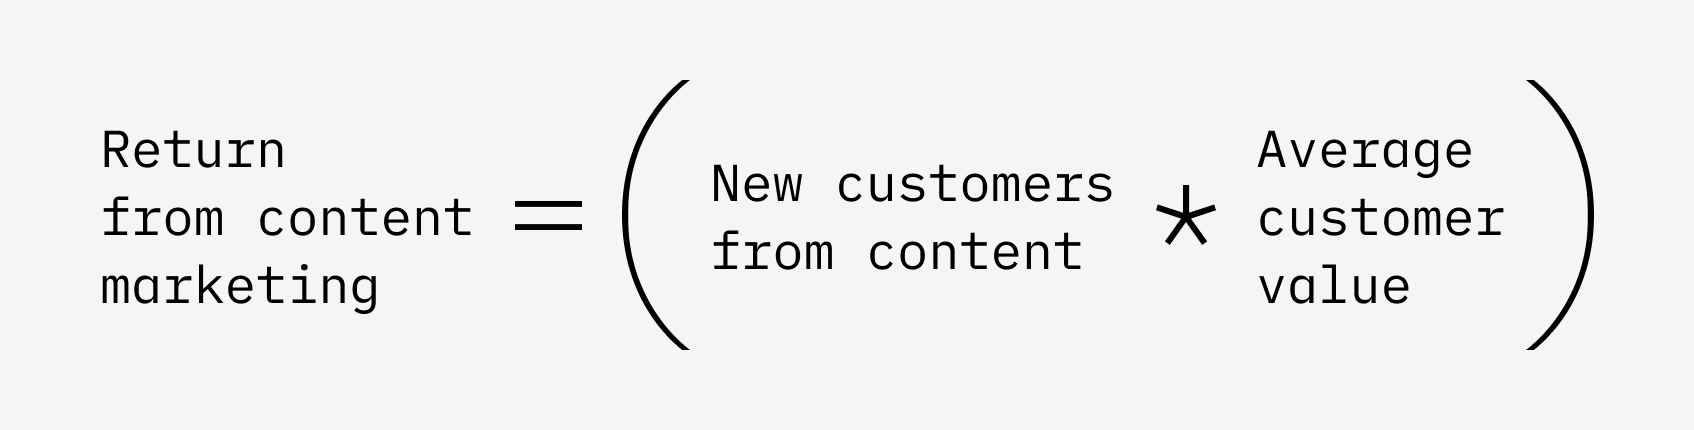 Retorno do marketing de conteúdo = (Novos clientes do conteúdo * ACV)